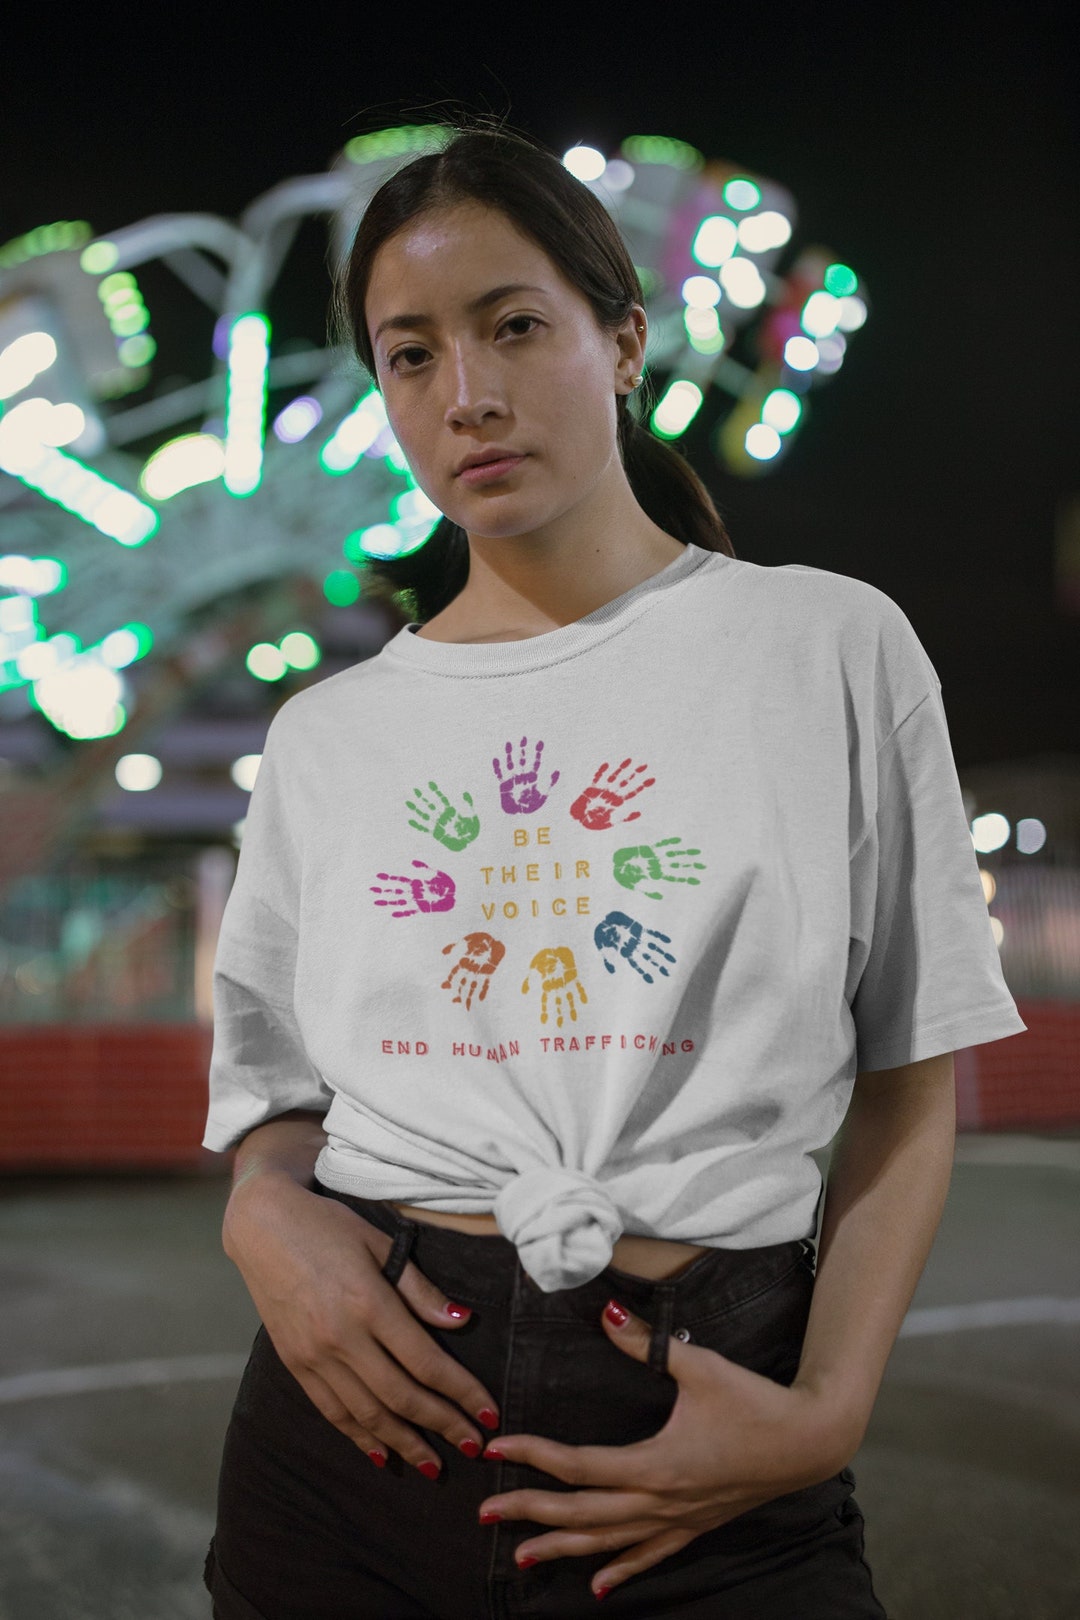 Human Trafficking Awareness Child Trafficking Shirt End - Etsy